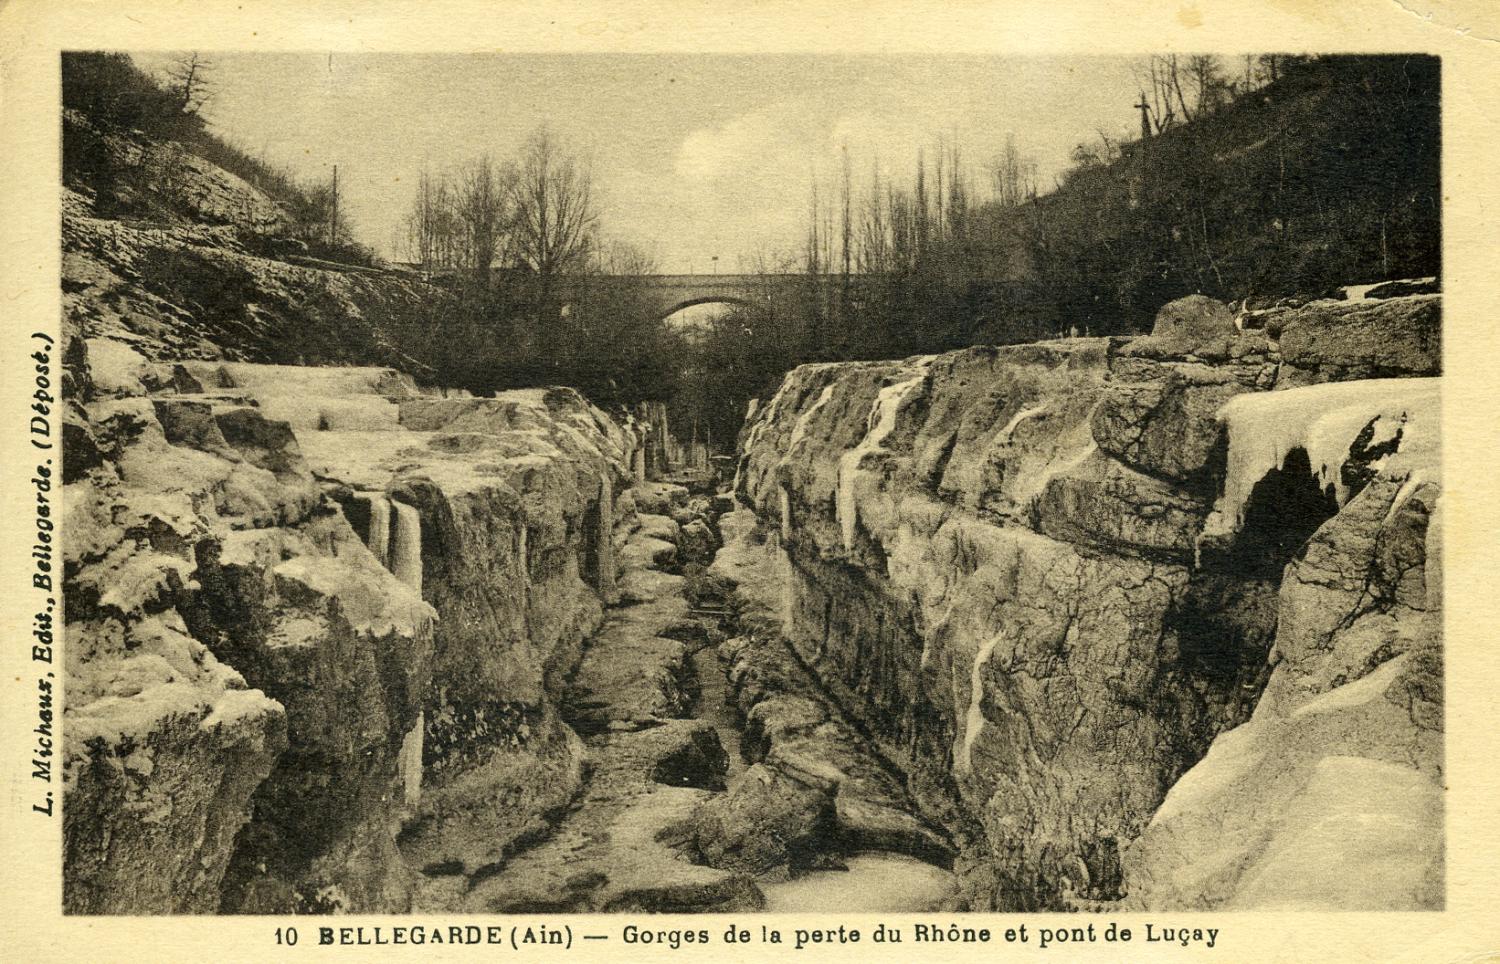 Bellegarde (Ain) - Gorges de la perte du Rhône et pont de Luçay.